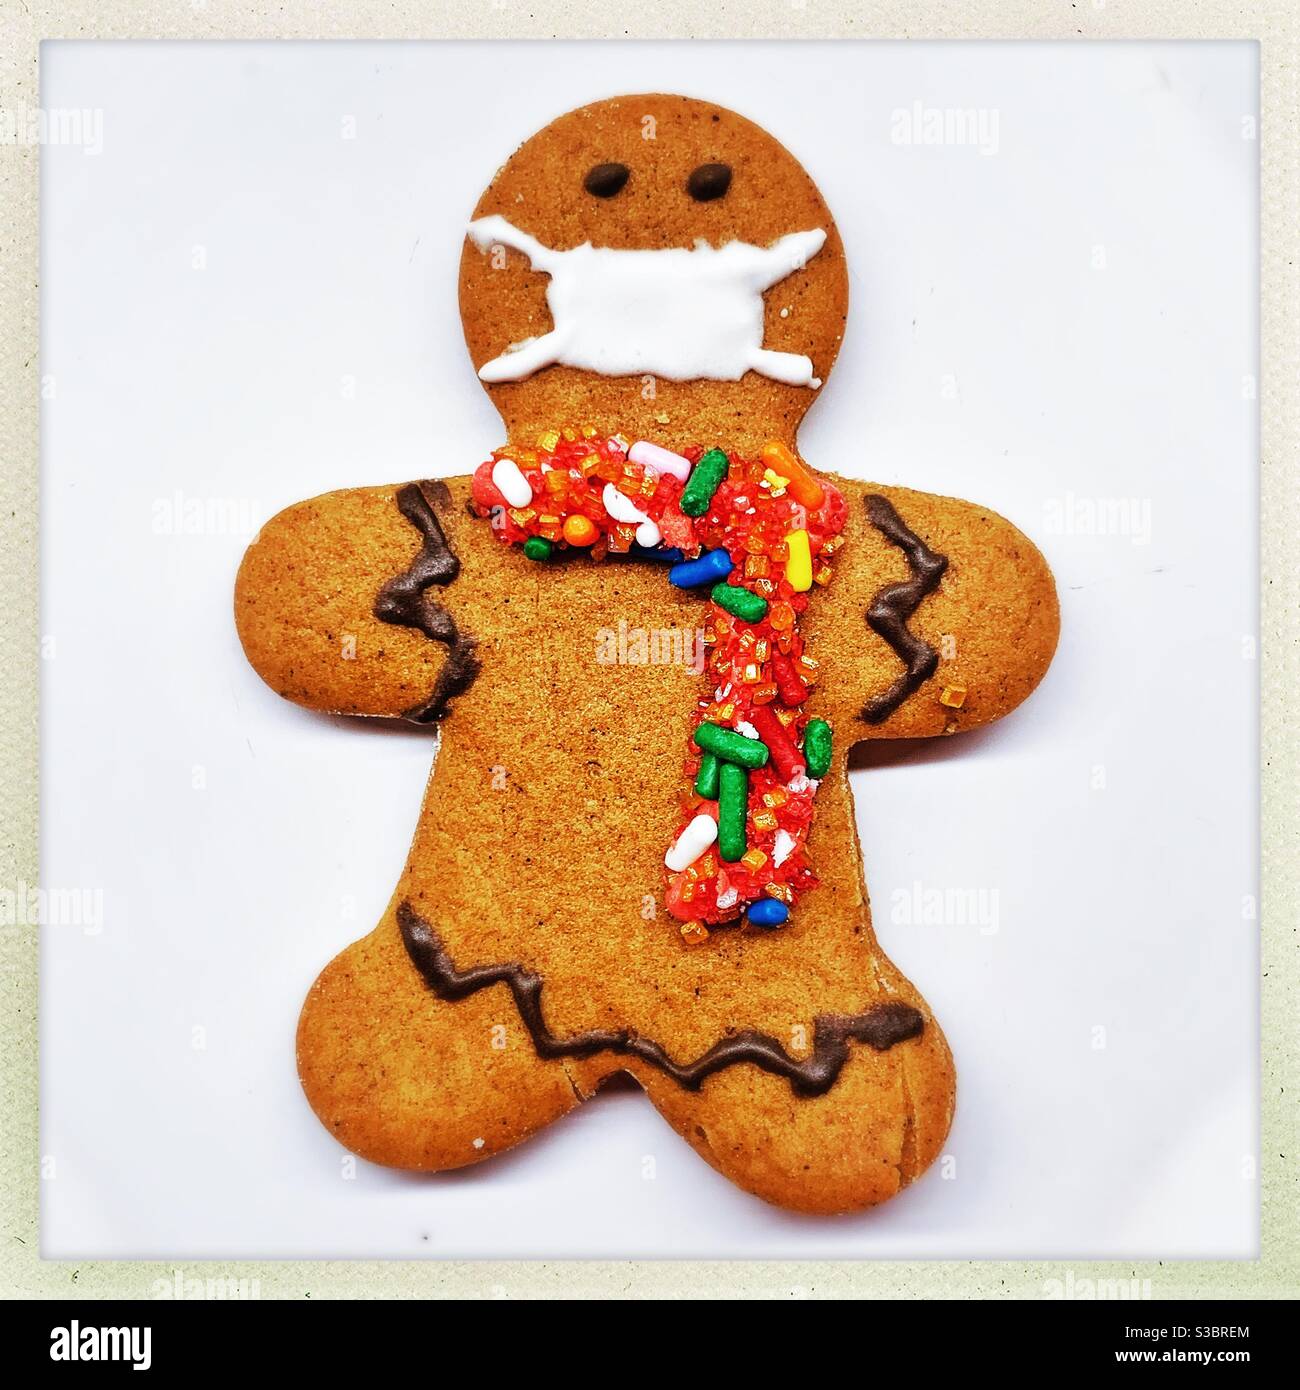 Un biscuit d'homme de pain d'épice fait maison est décoré d'un foulard de bonbons coloré et d'un masque facial. Banque D'Images